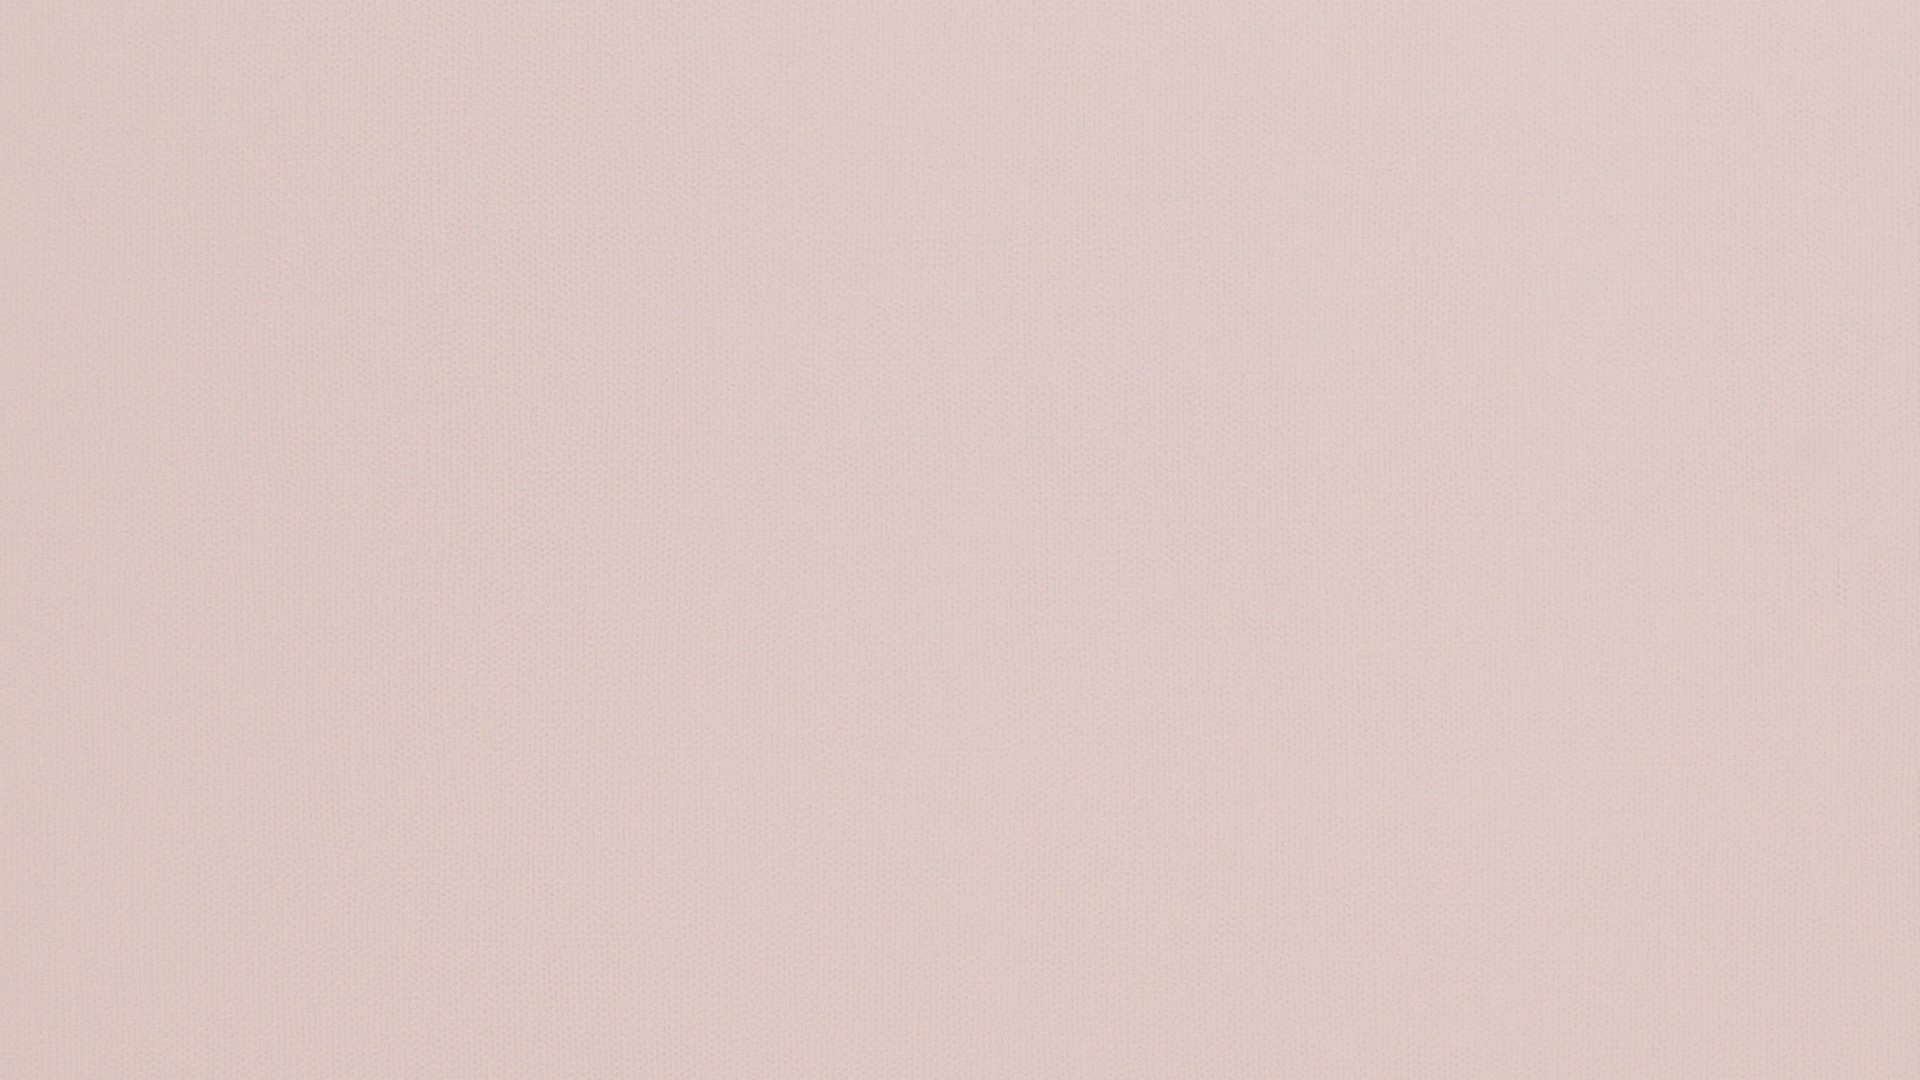 Pastel Pink Wallpaper Free Download